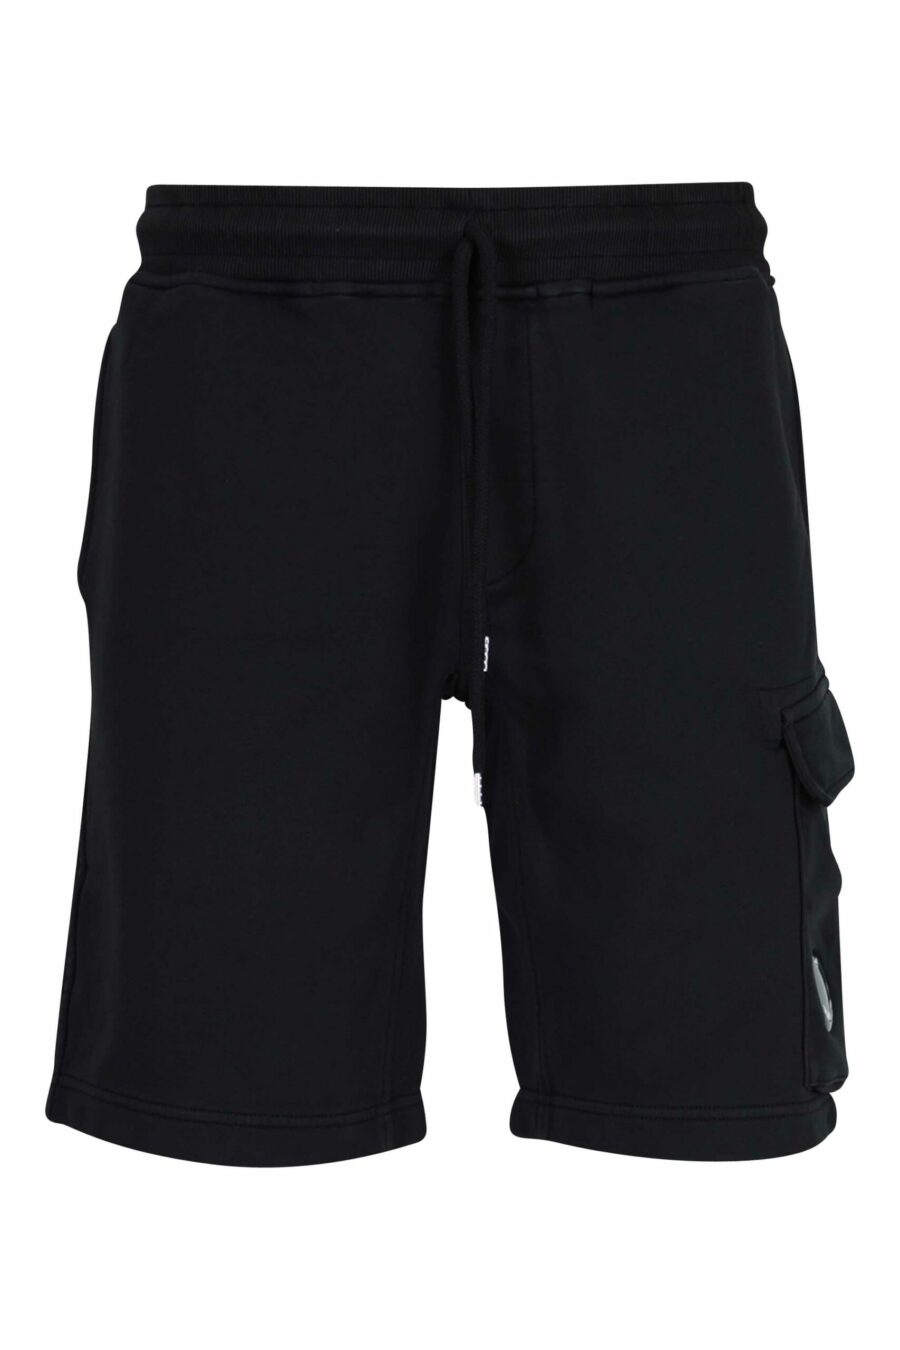 Pantalón de chándal corto negro estilo cargo con logo lente - 7620943730982 scaled